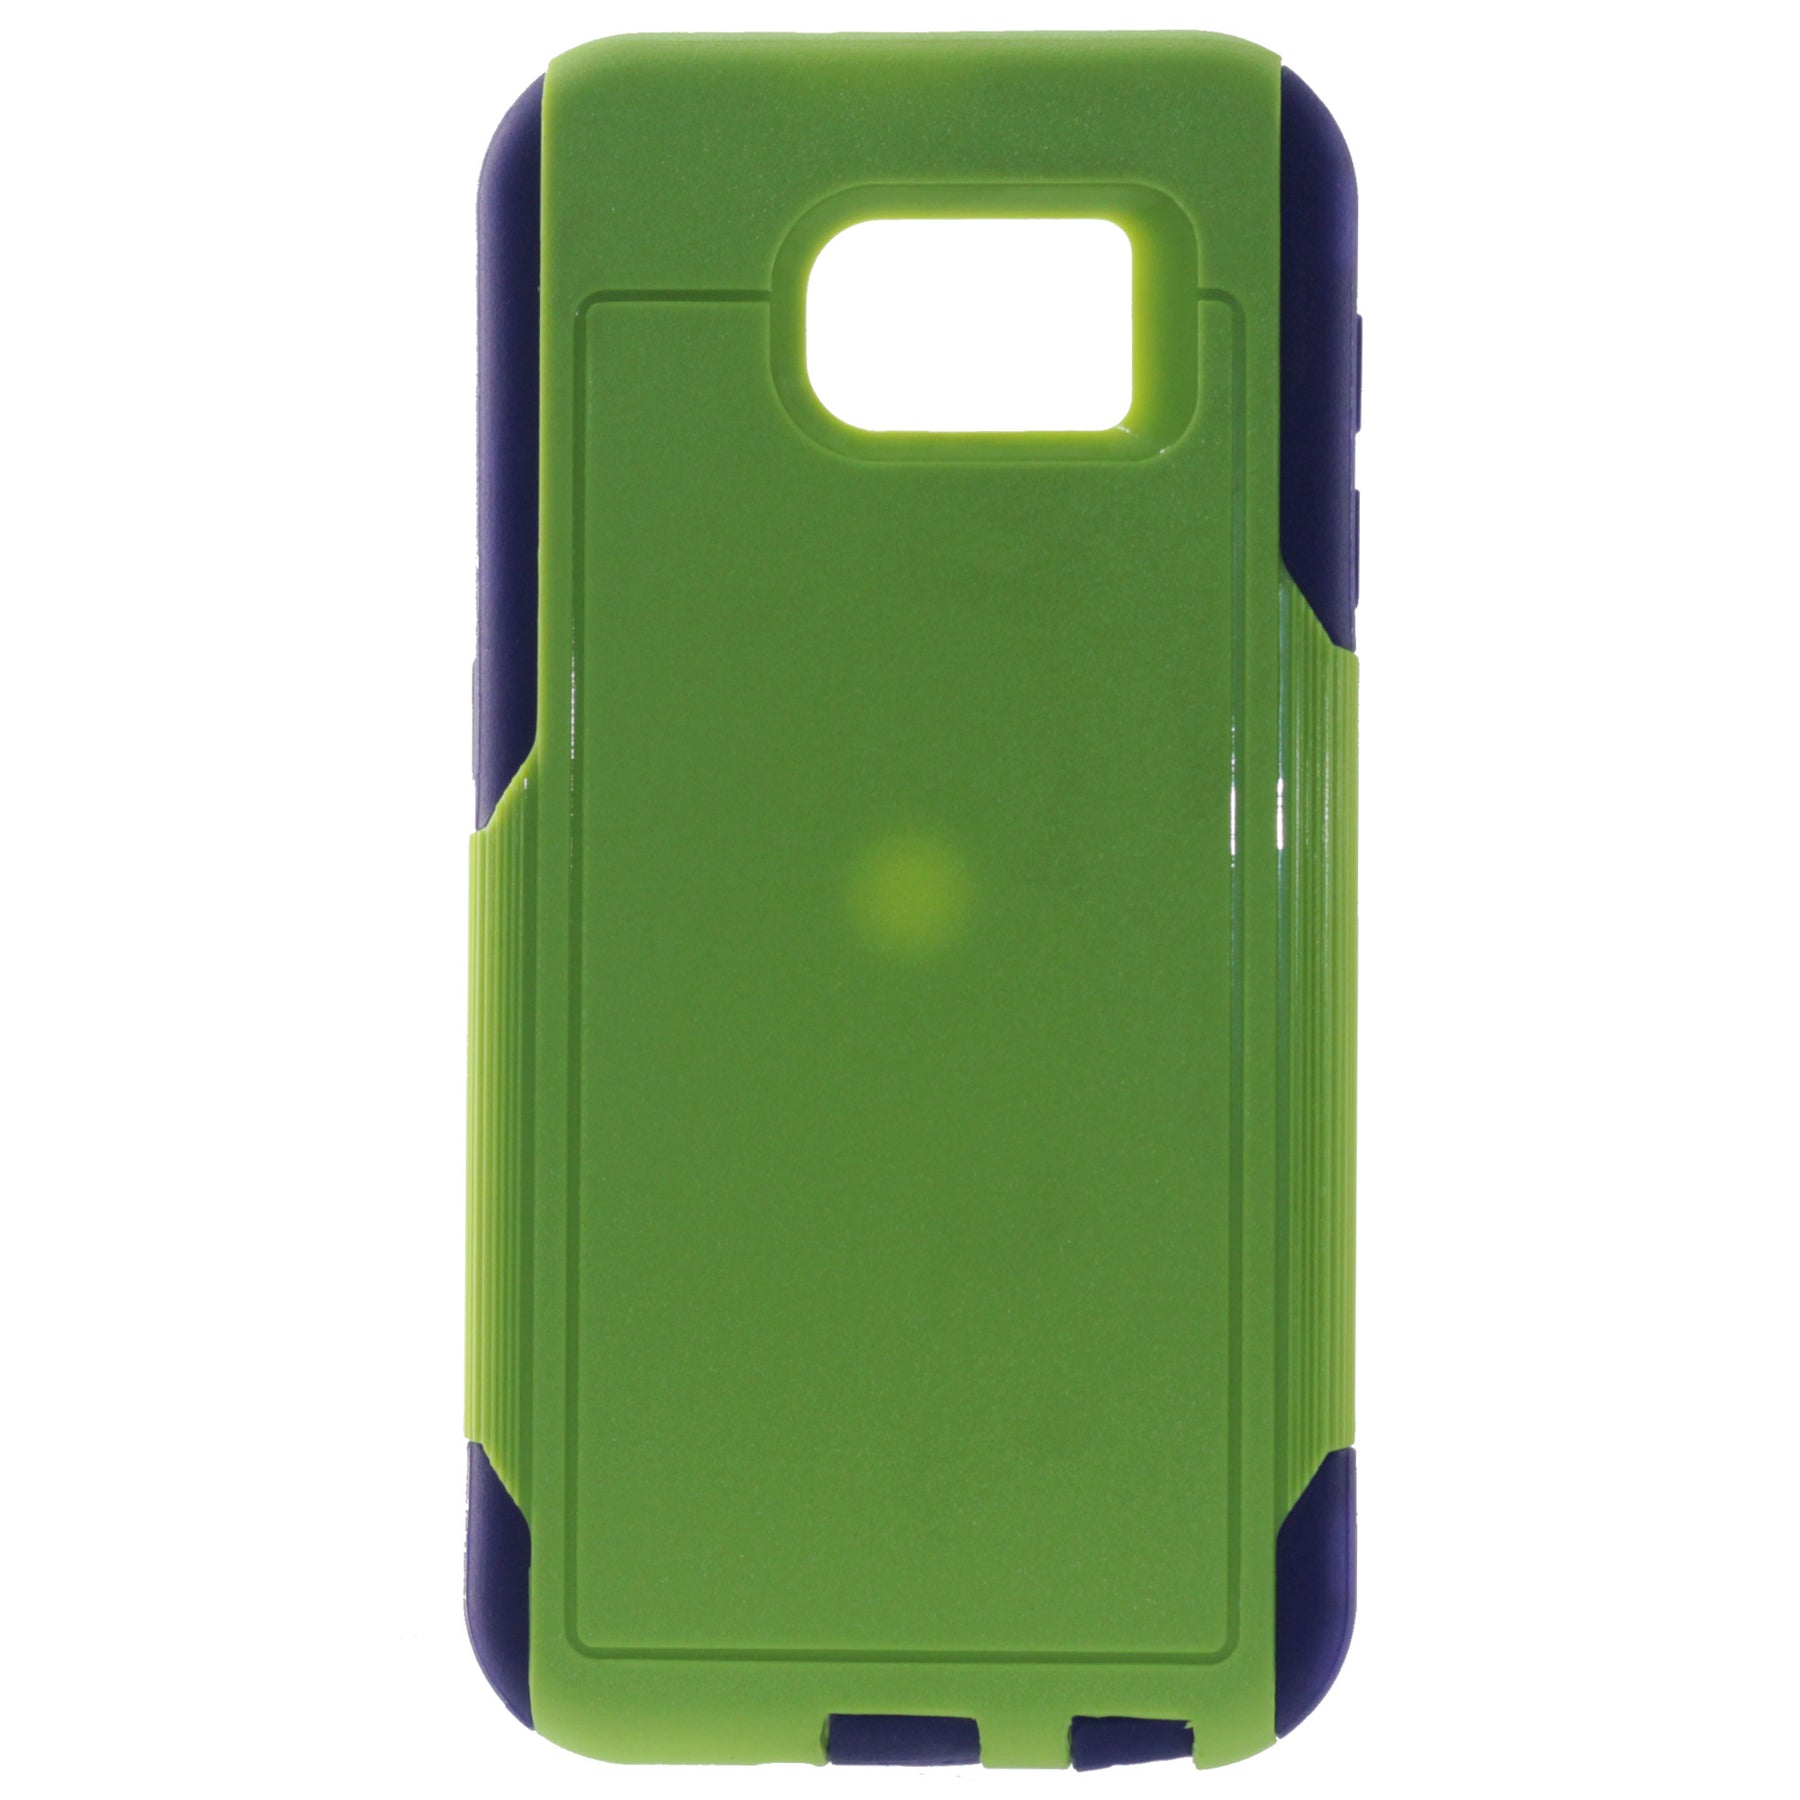 Samsung S6 green case